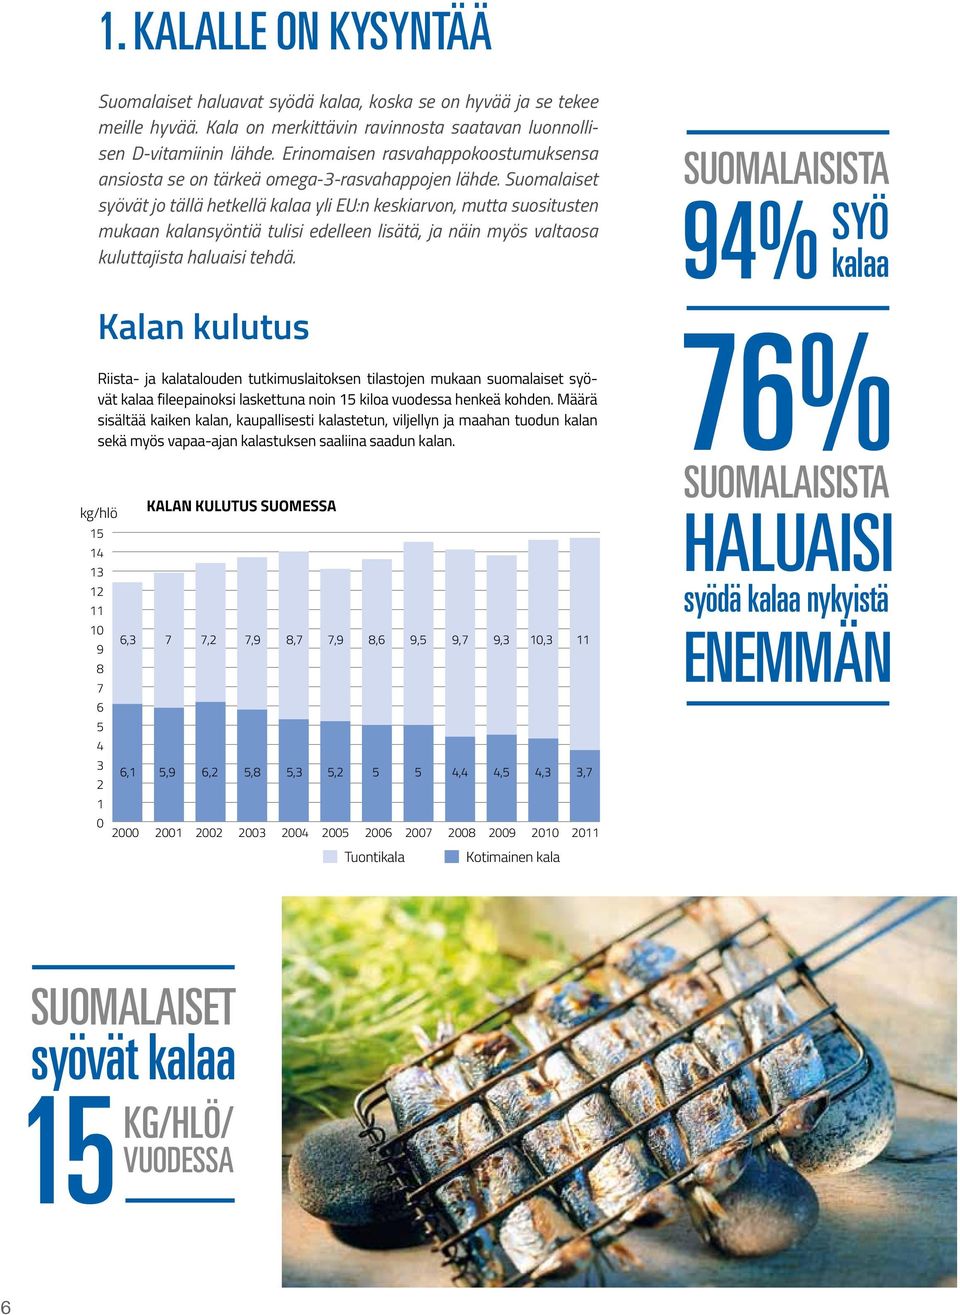 Suomalaiset syövät jo tällä hetkellä kalaa yli EU:n keskiarvon, mutta suositusten mukaan kalansyöntiä tulisi edelleen lisätä, ja näin myös valtaosa kuluttajista haluaisi tehdä.